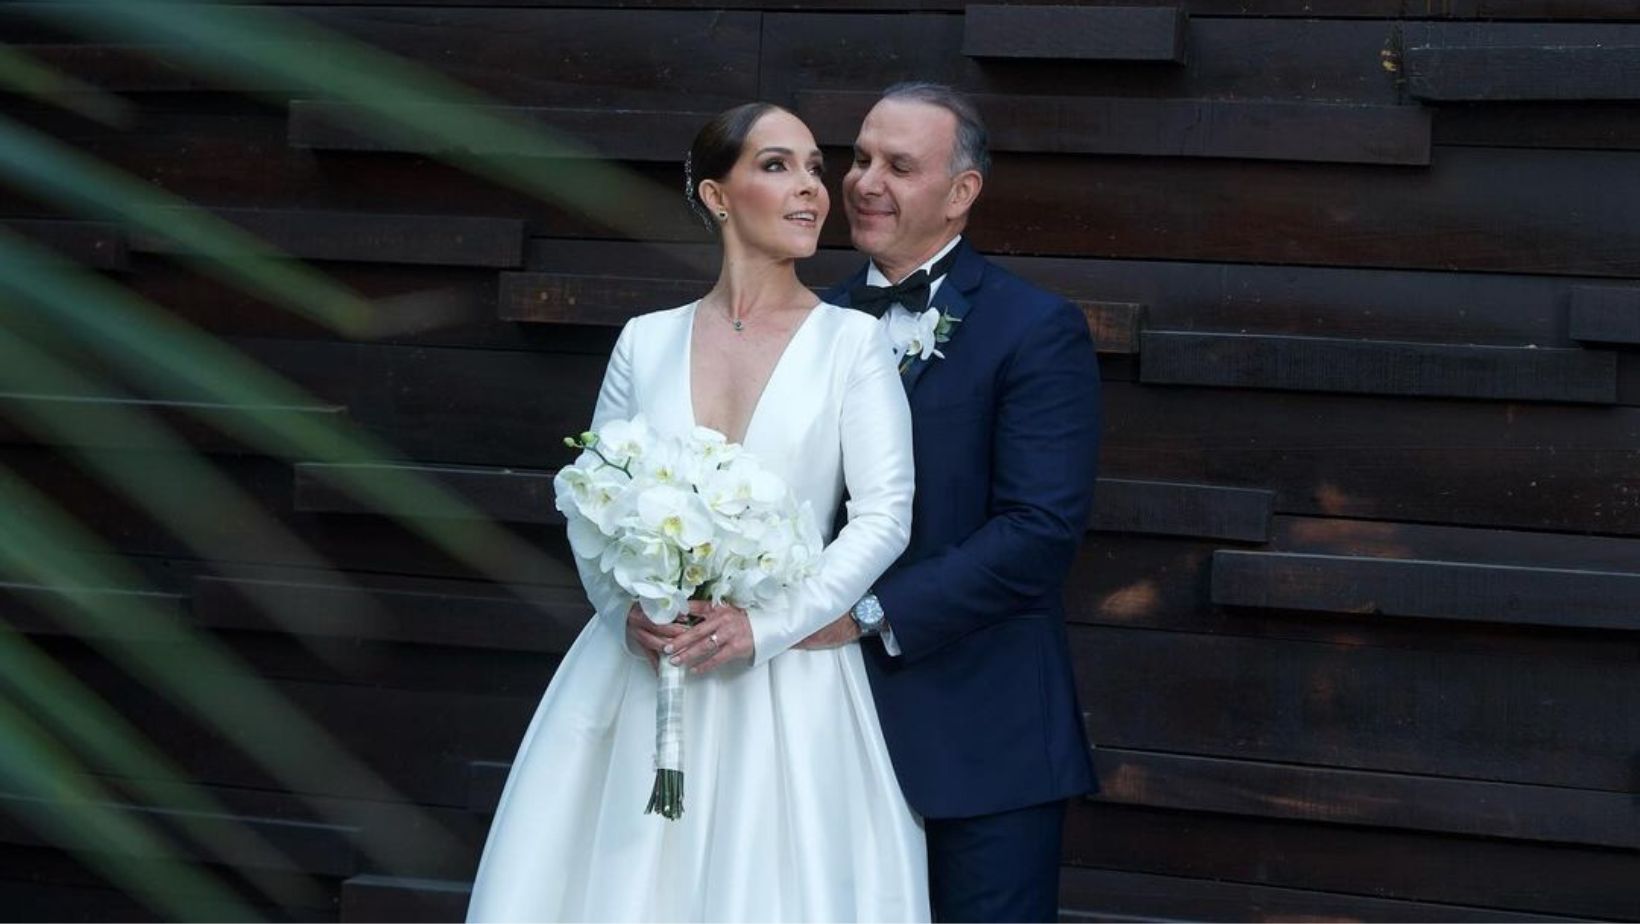 sharis cid y pedro canavati: la exclusiva lista de invitados a su boda